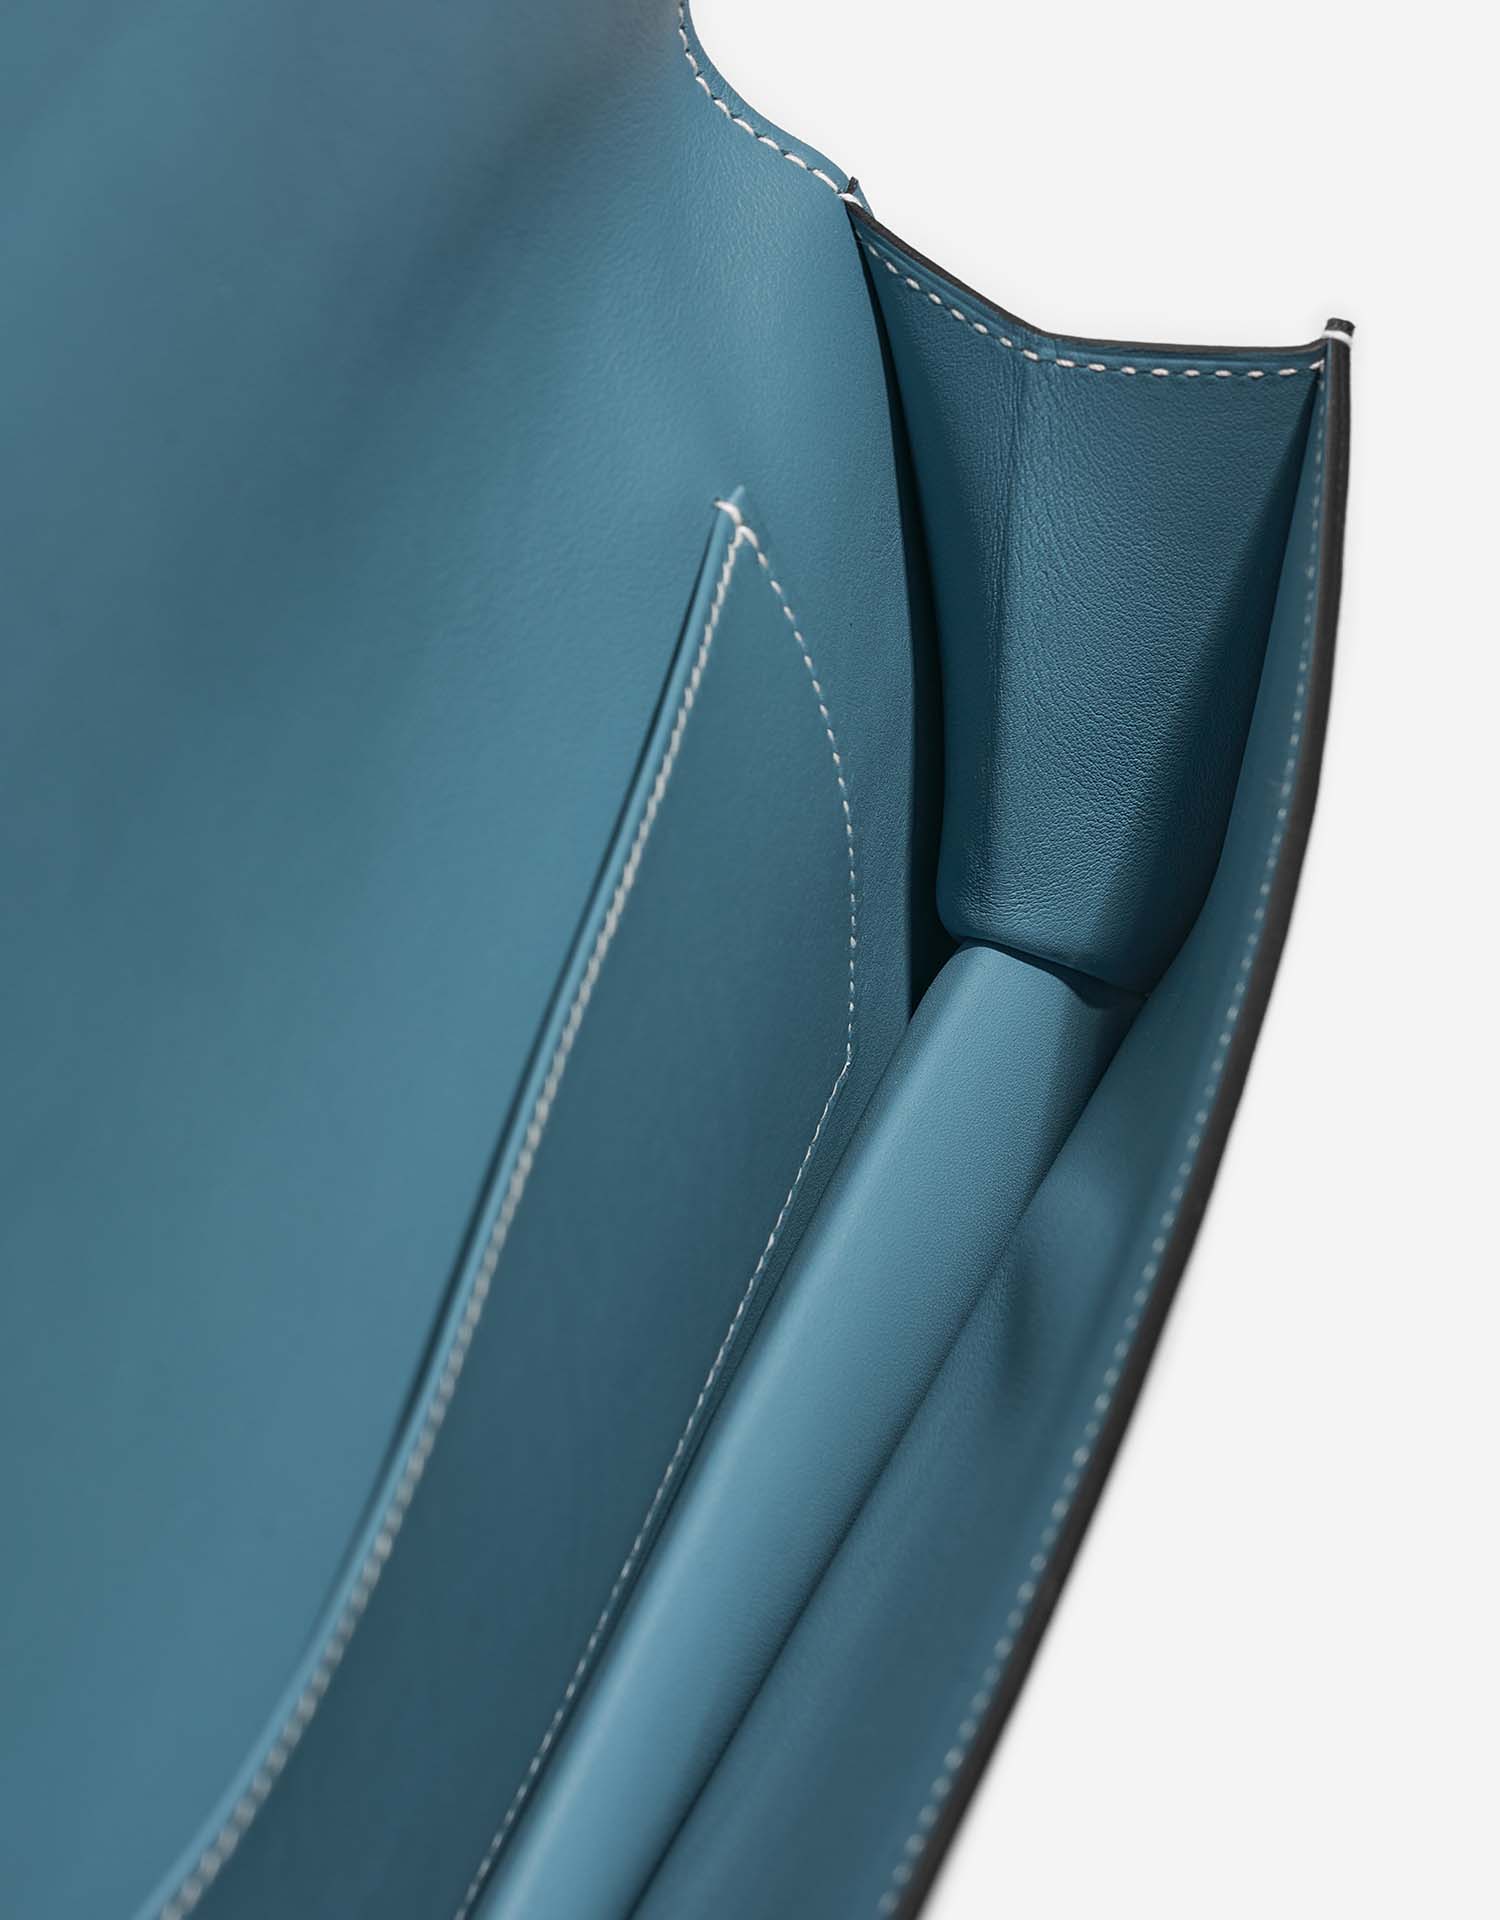 Hermès KellyCutClutch onesize BlueJean Inside | Verkaufen Sie Ihre Designer-Tasche auf Saclab.com